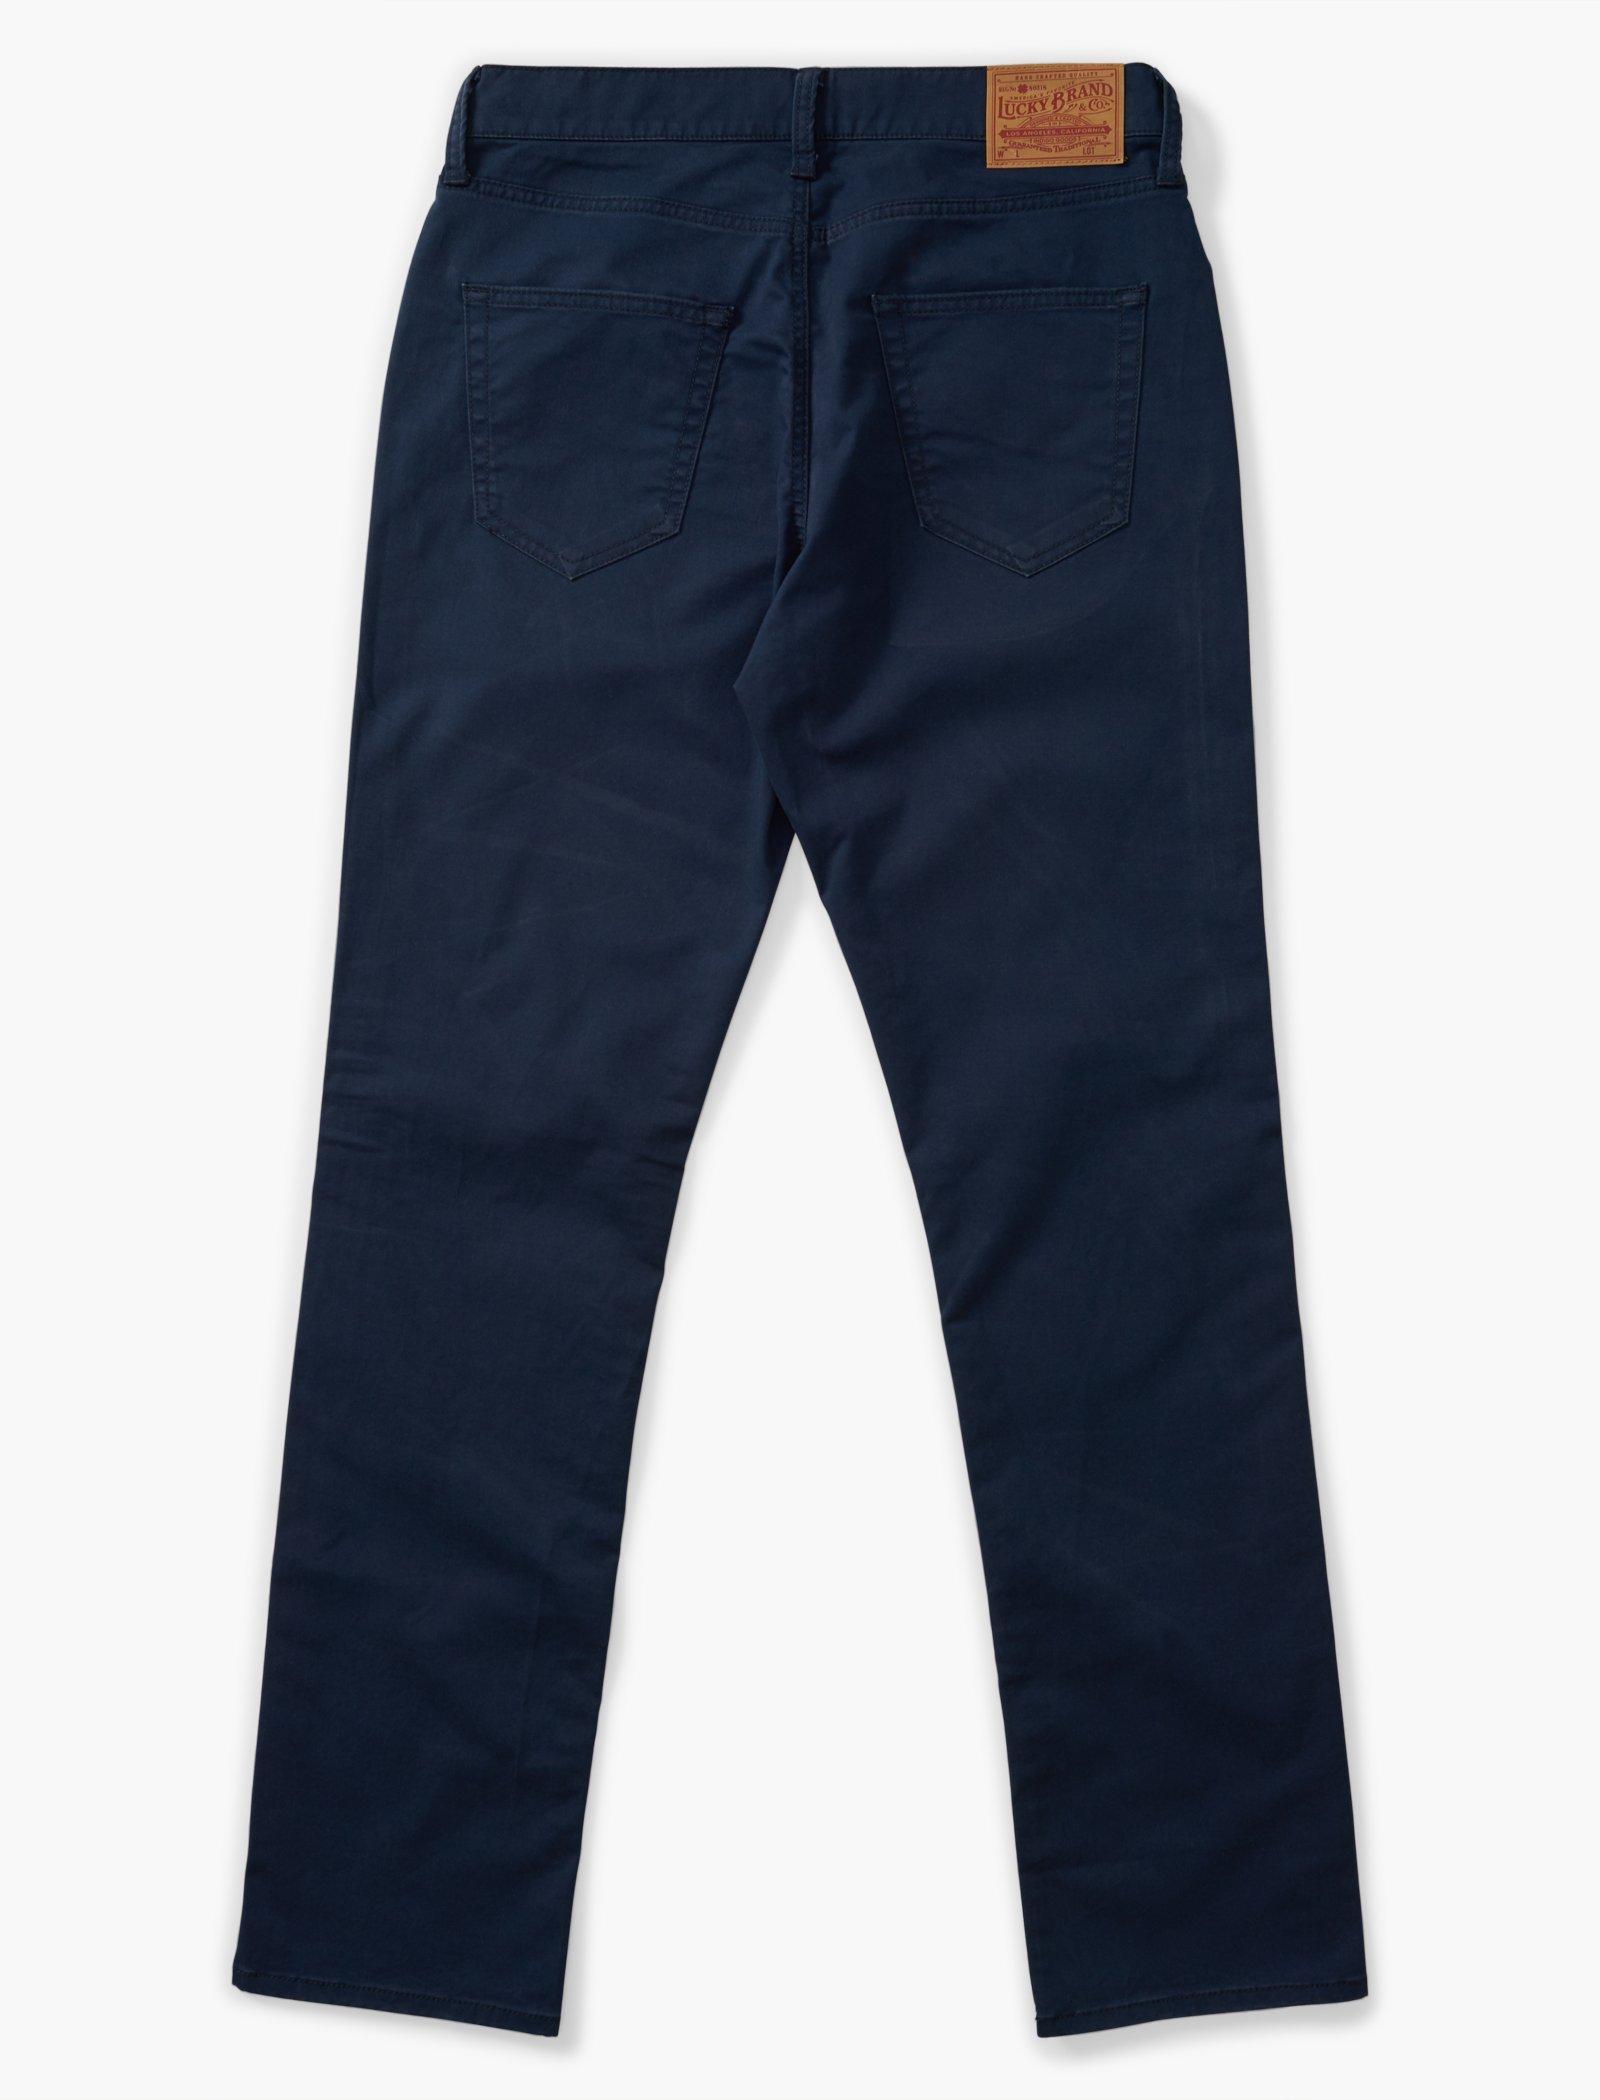 Lucky Brand 410 Athletic Slim Jeans Men's Size 38/32 Blue Denim Straight Leg